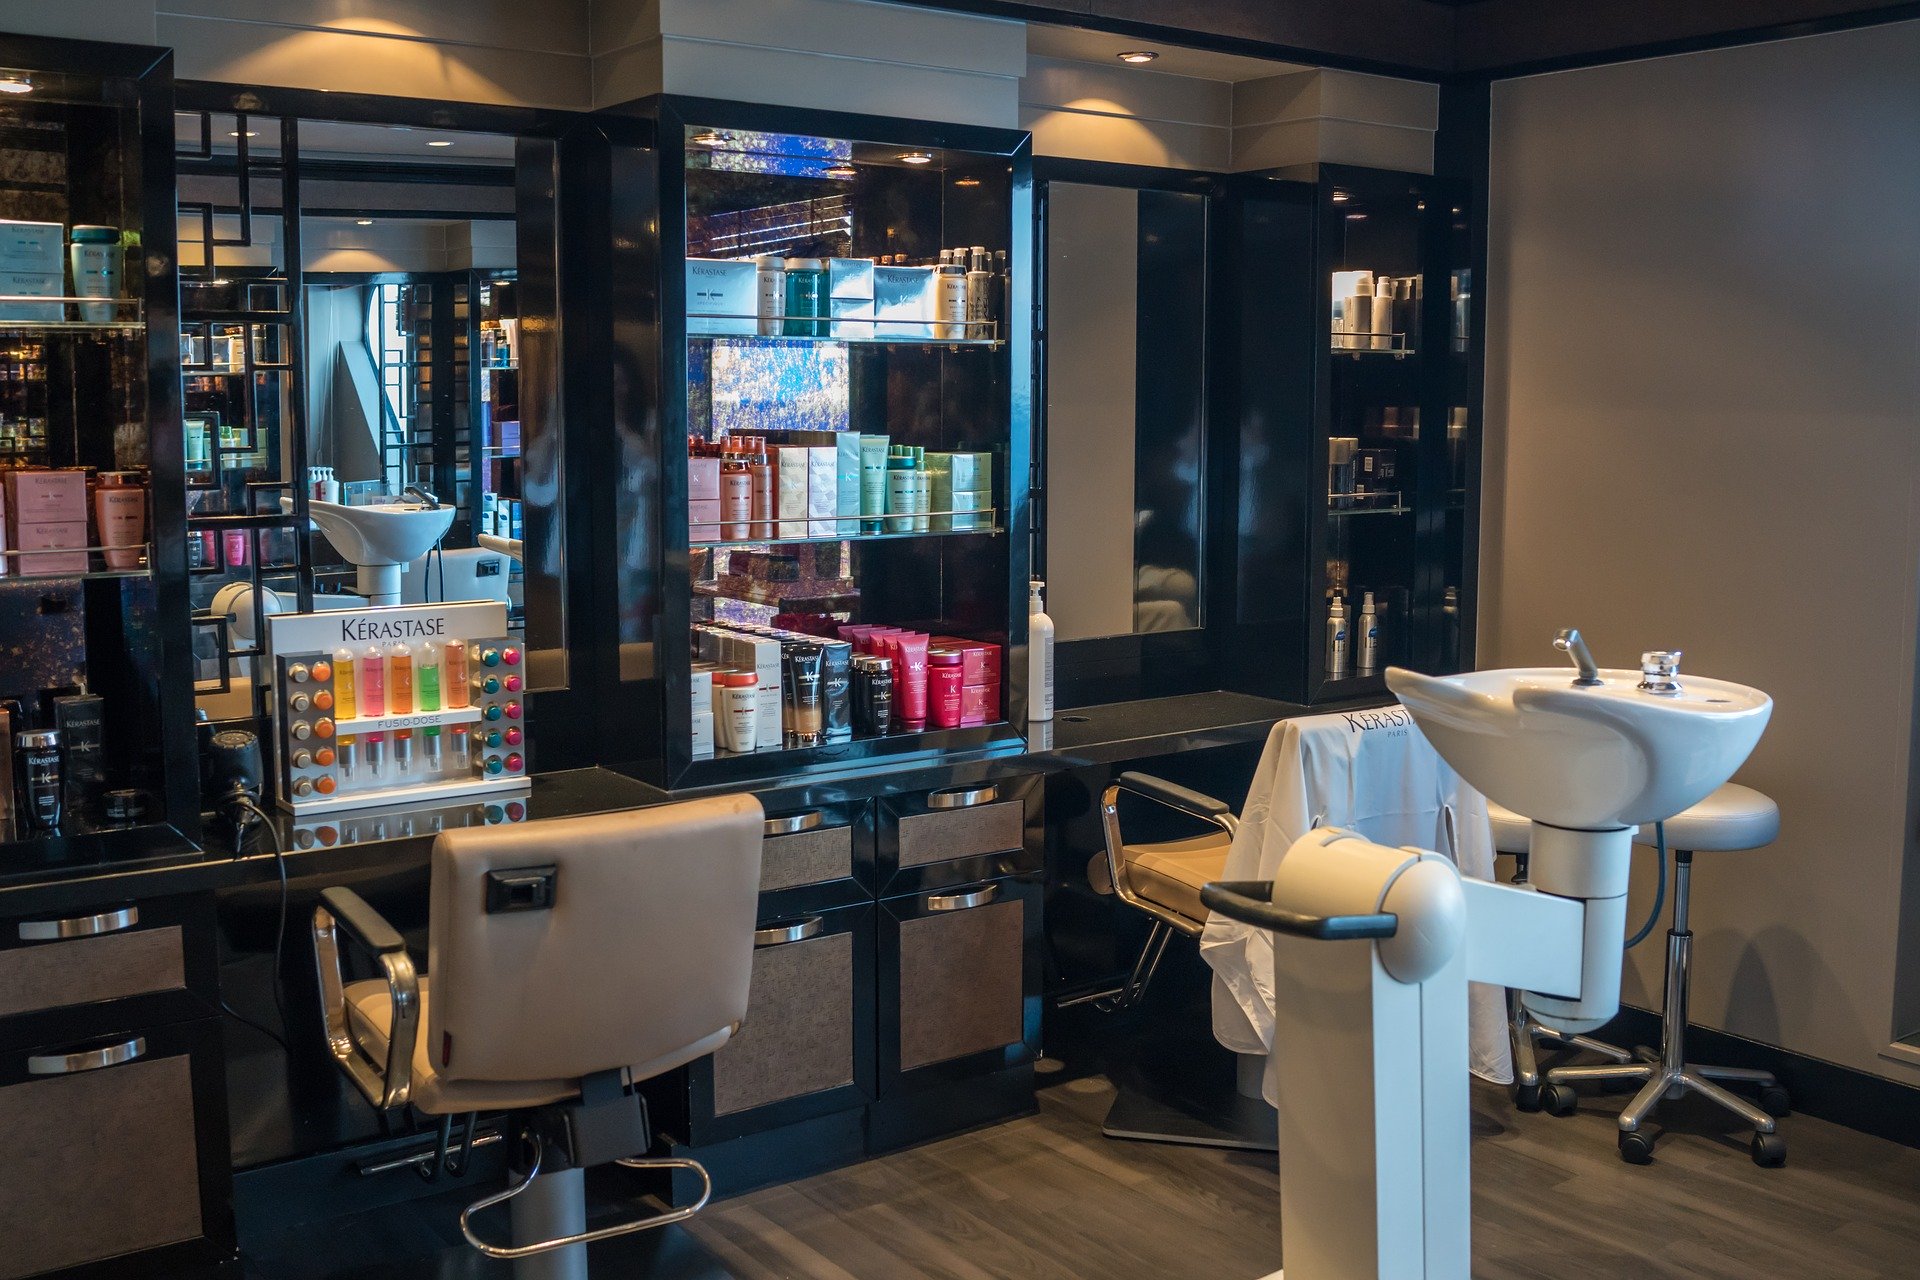 Od 18 maja otwarte zakłady fryzjerskie i kosmetyczne, ruszają restauracje